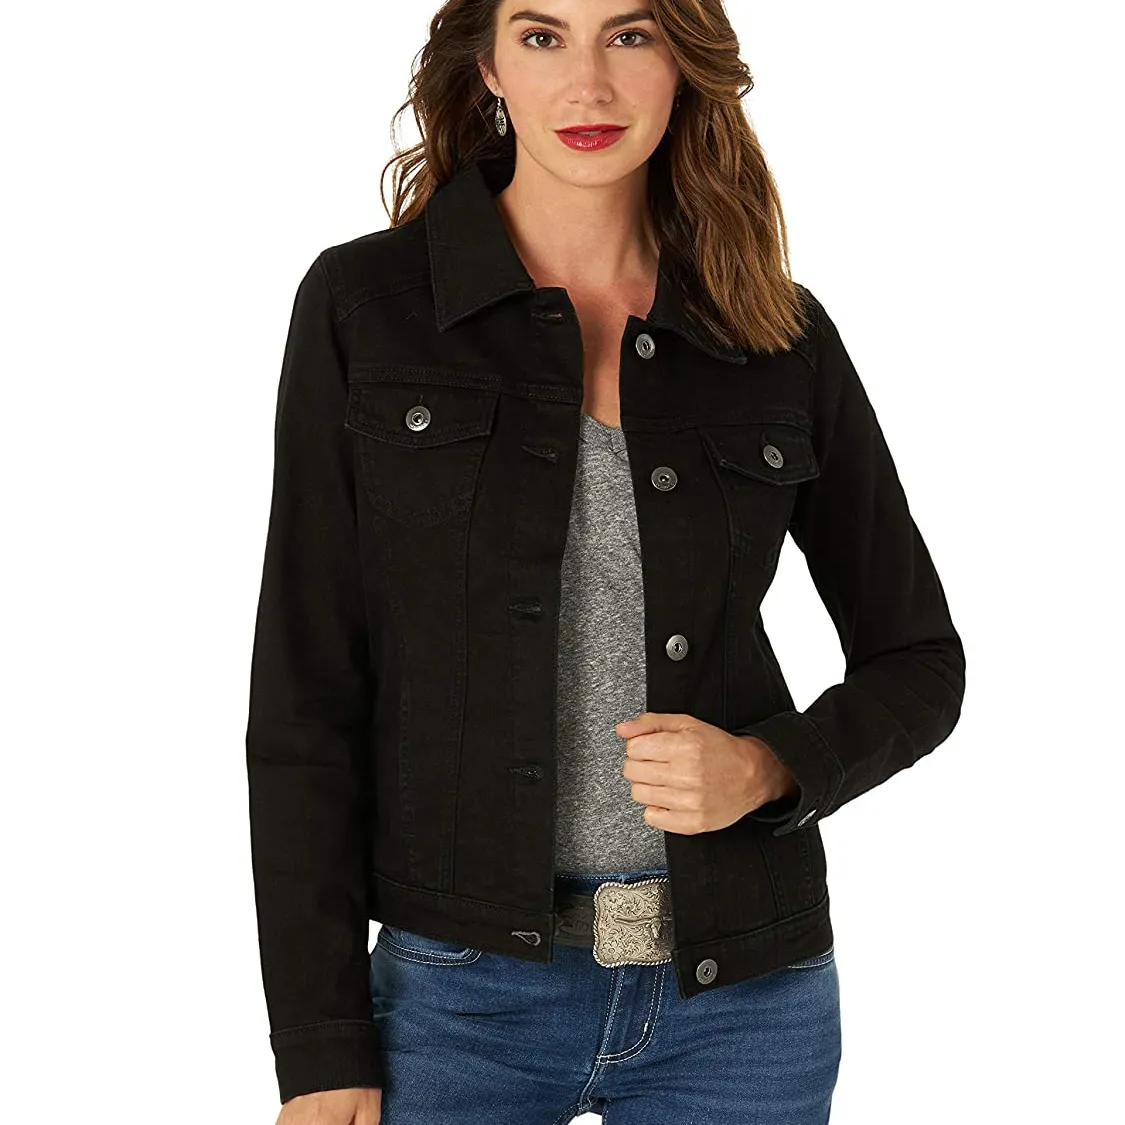 सादे काले धोया जींस जैकेट बटन अप महिलाओं उच्च गुणवत्ता डेनिम सर्दियों जैकेट के साथ कस्टम लोगो